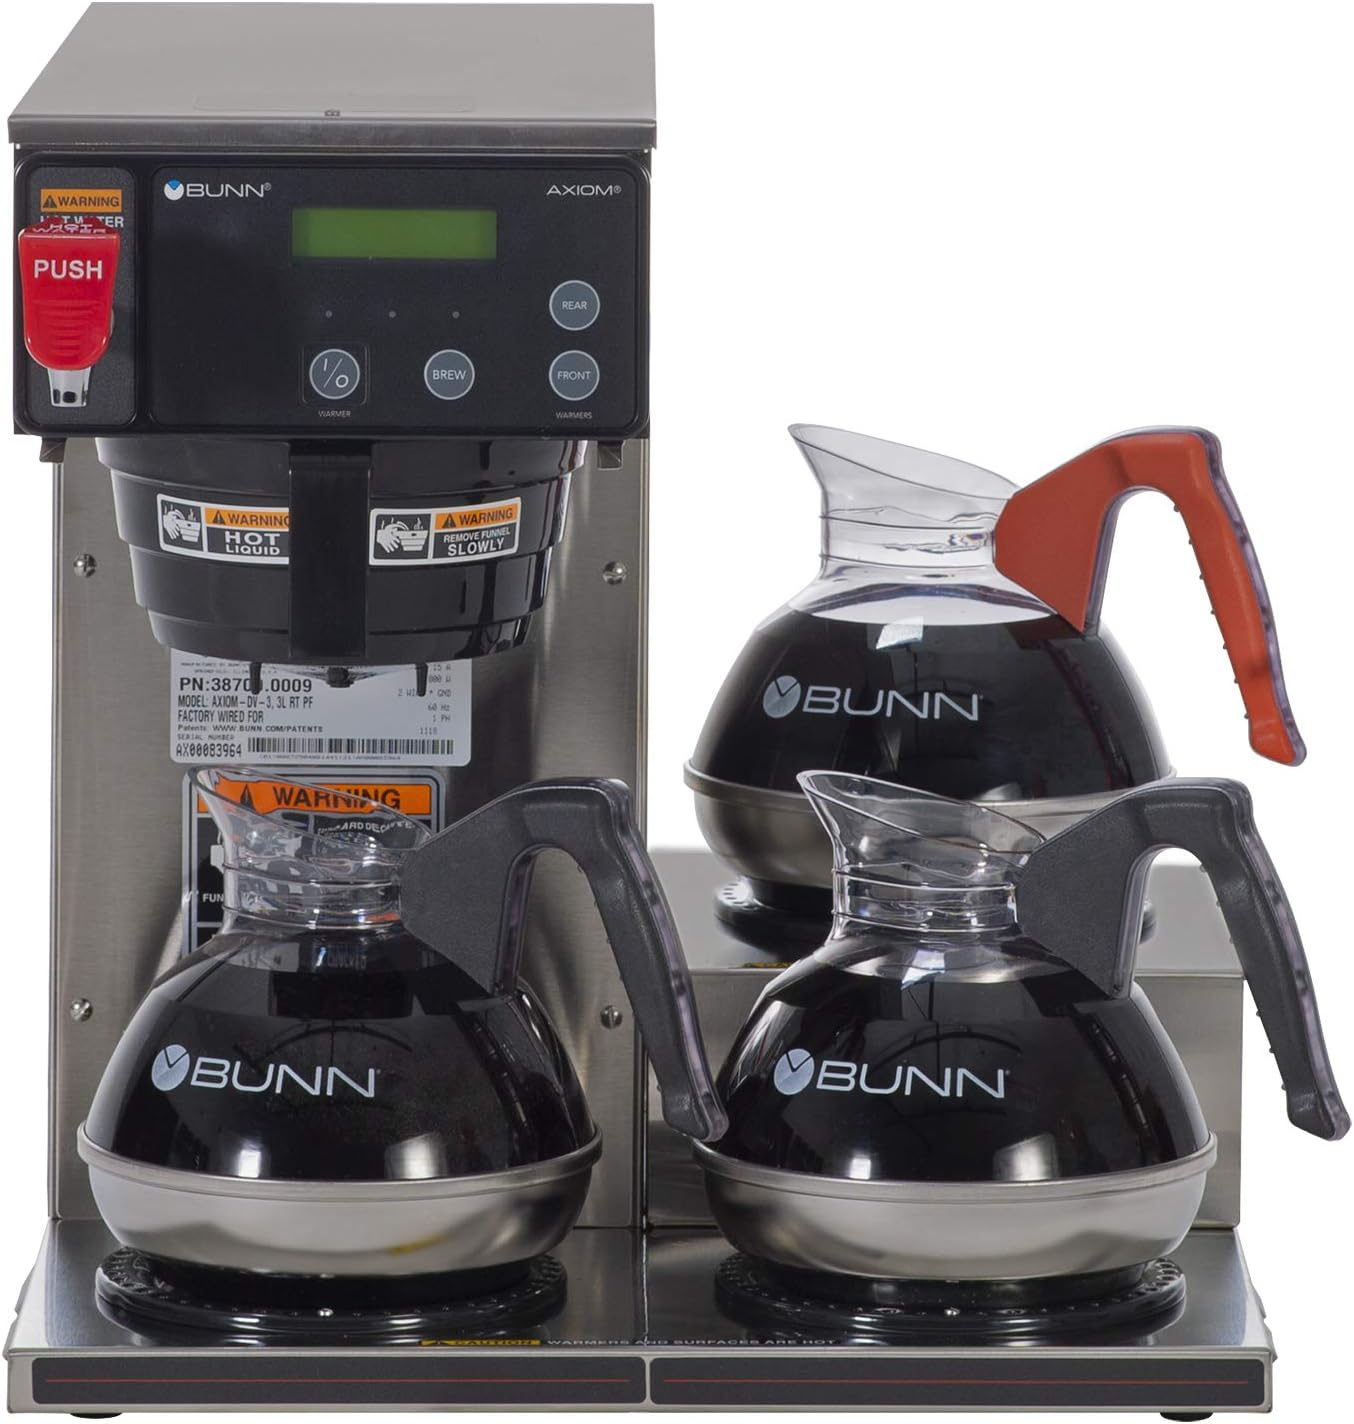 Bunn Axiom 15-3 Coffee Maker Review